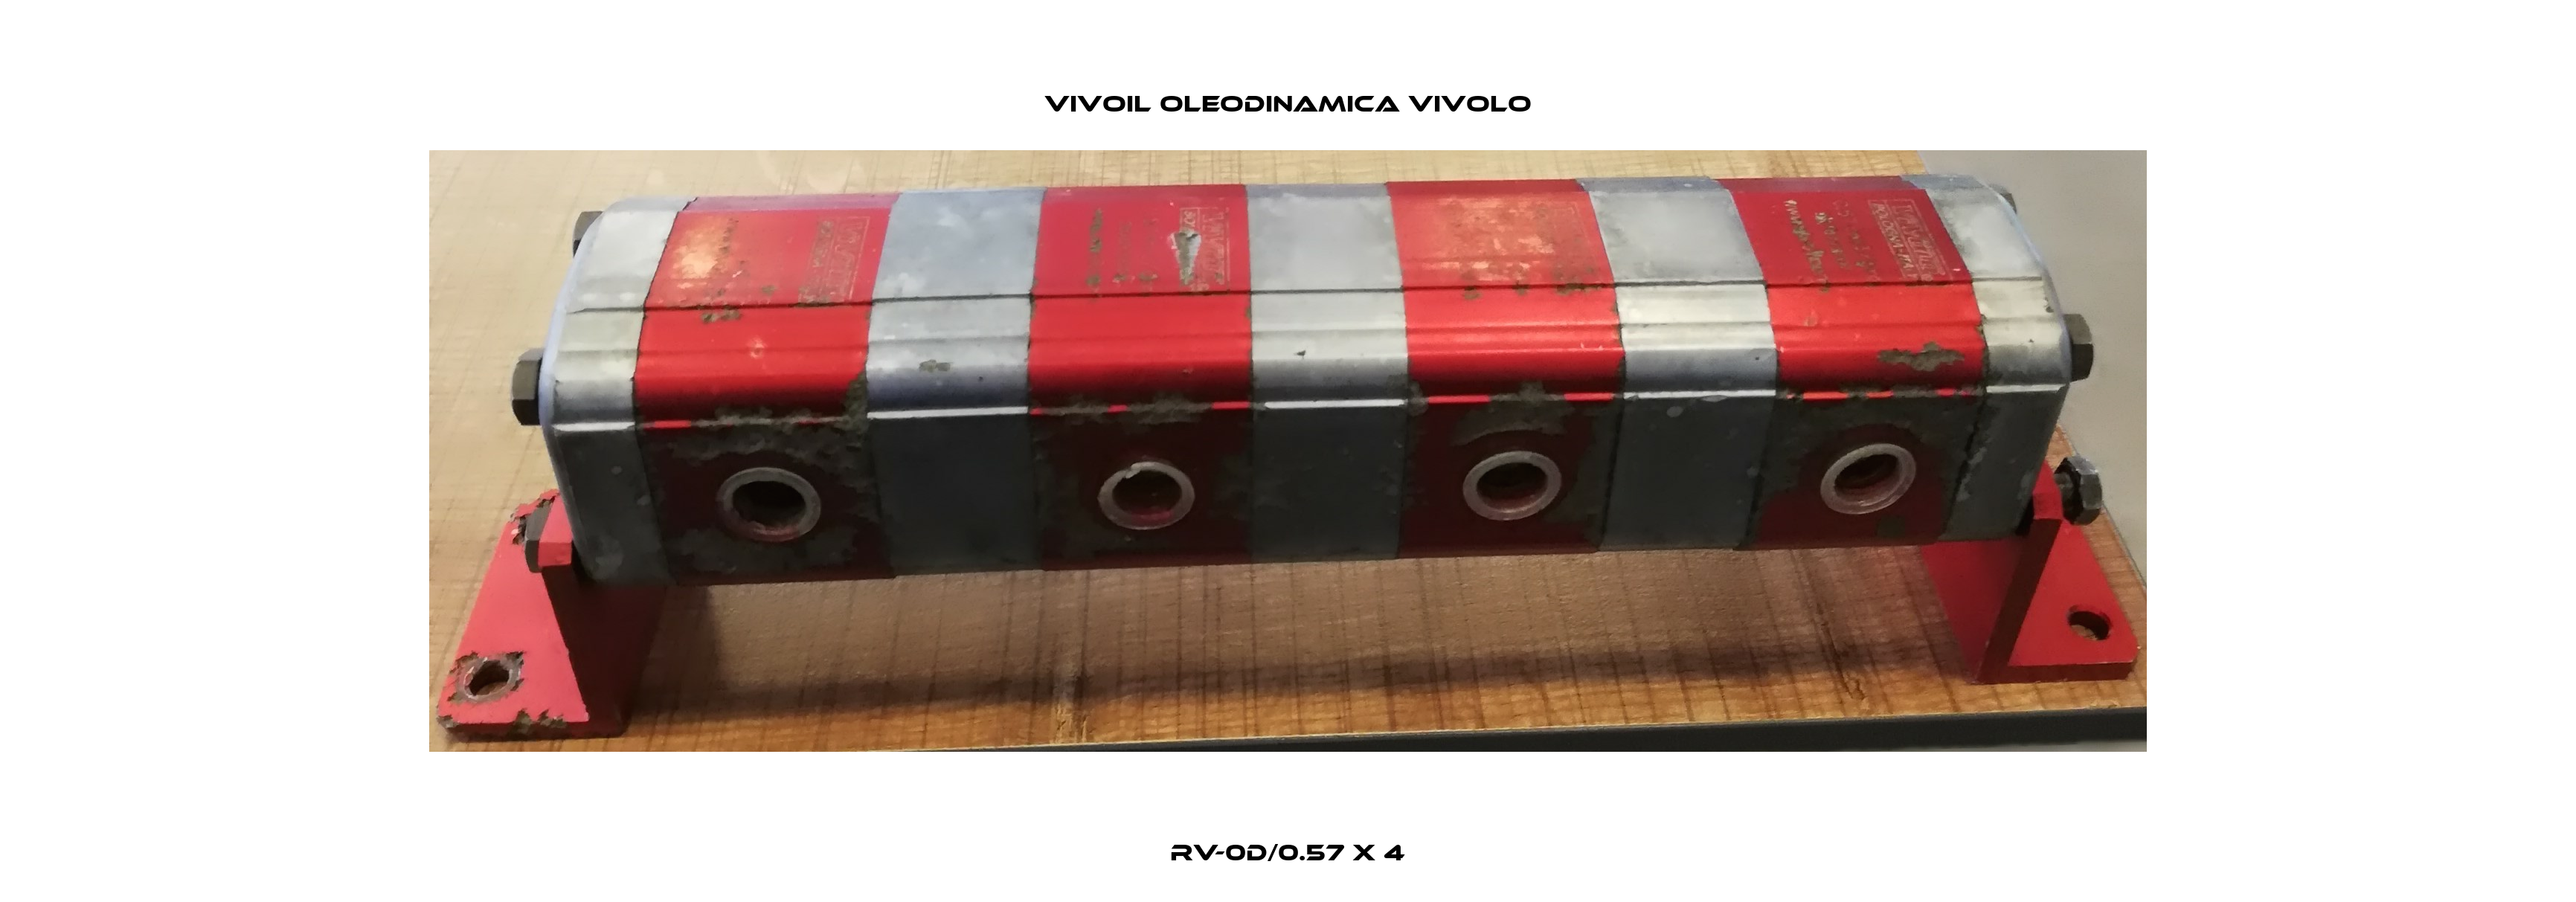 RV-0D/0.57 x 4 Vivoil Oleodinamica Vivolo